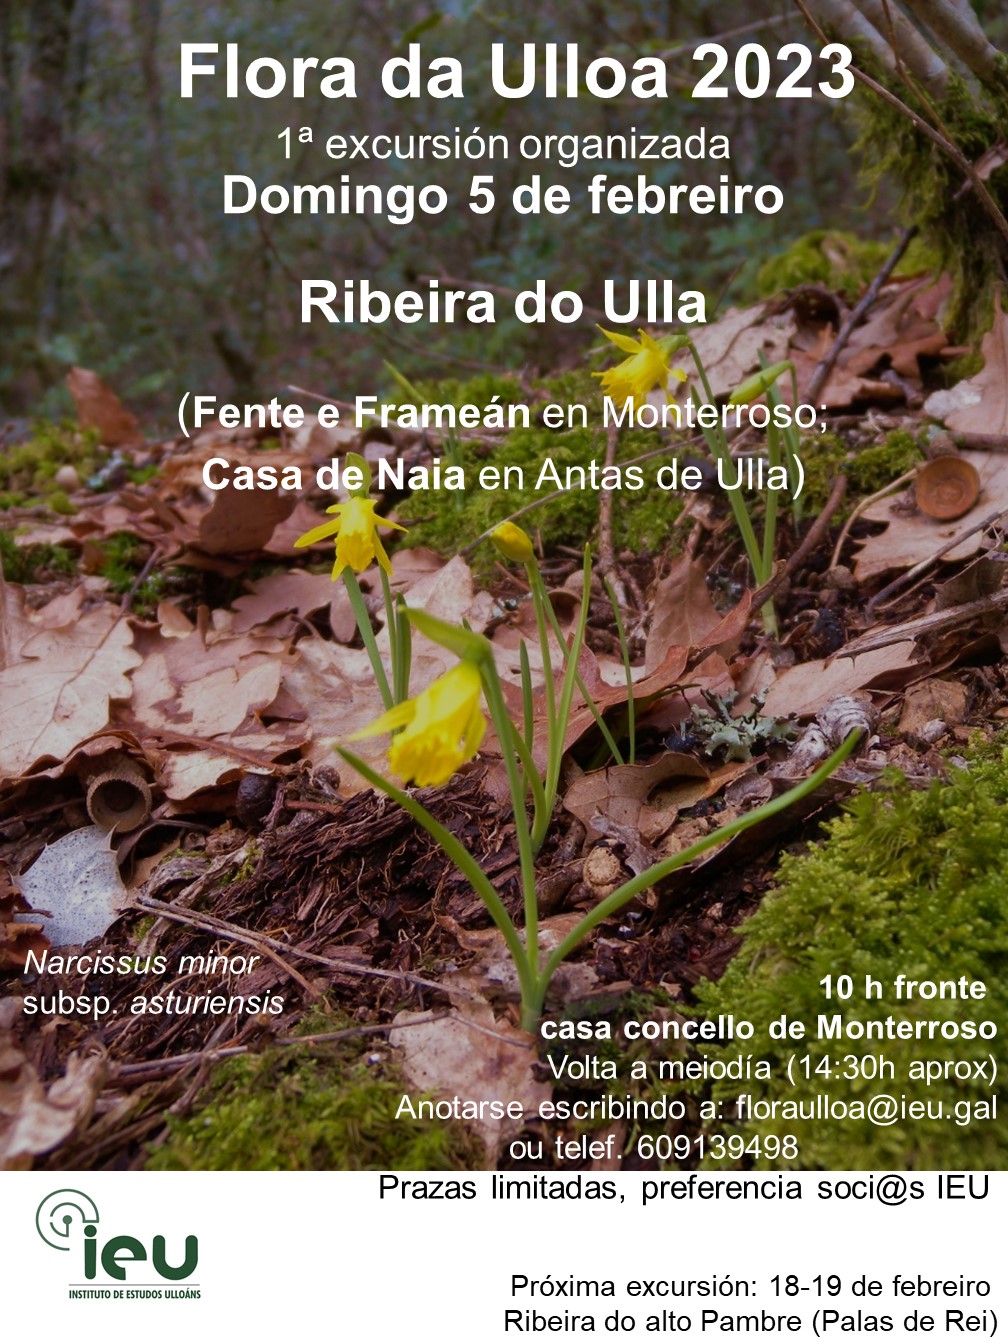 Excursión Flora da Ulloa 1ª 2023, Ribeira do Ulla, Fente, 5-2-2023,